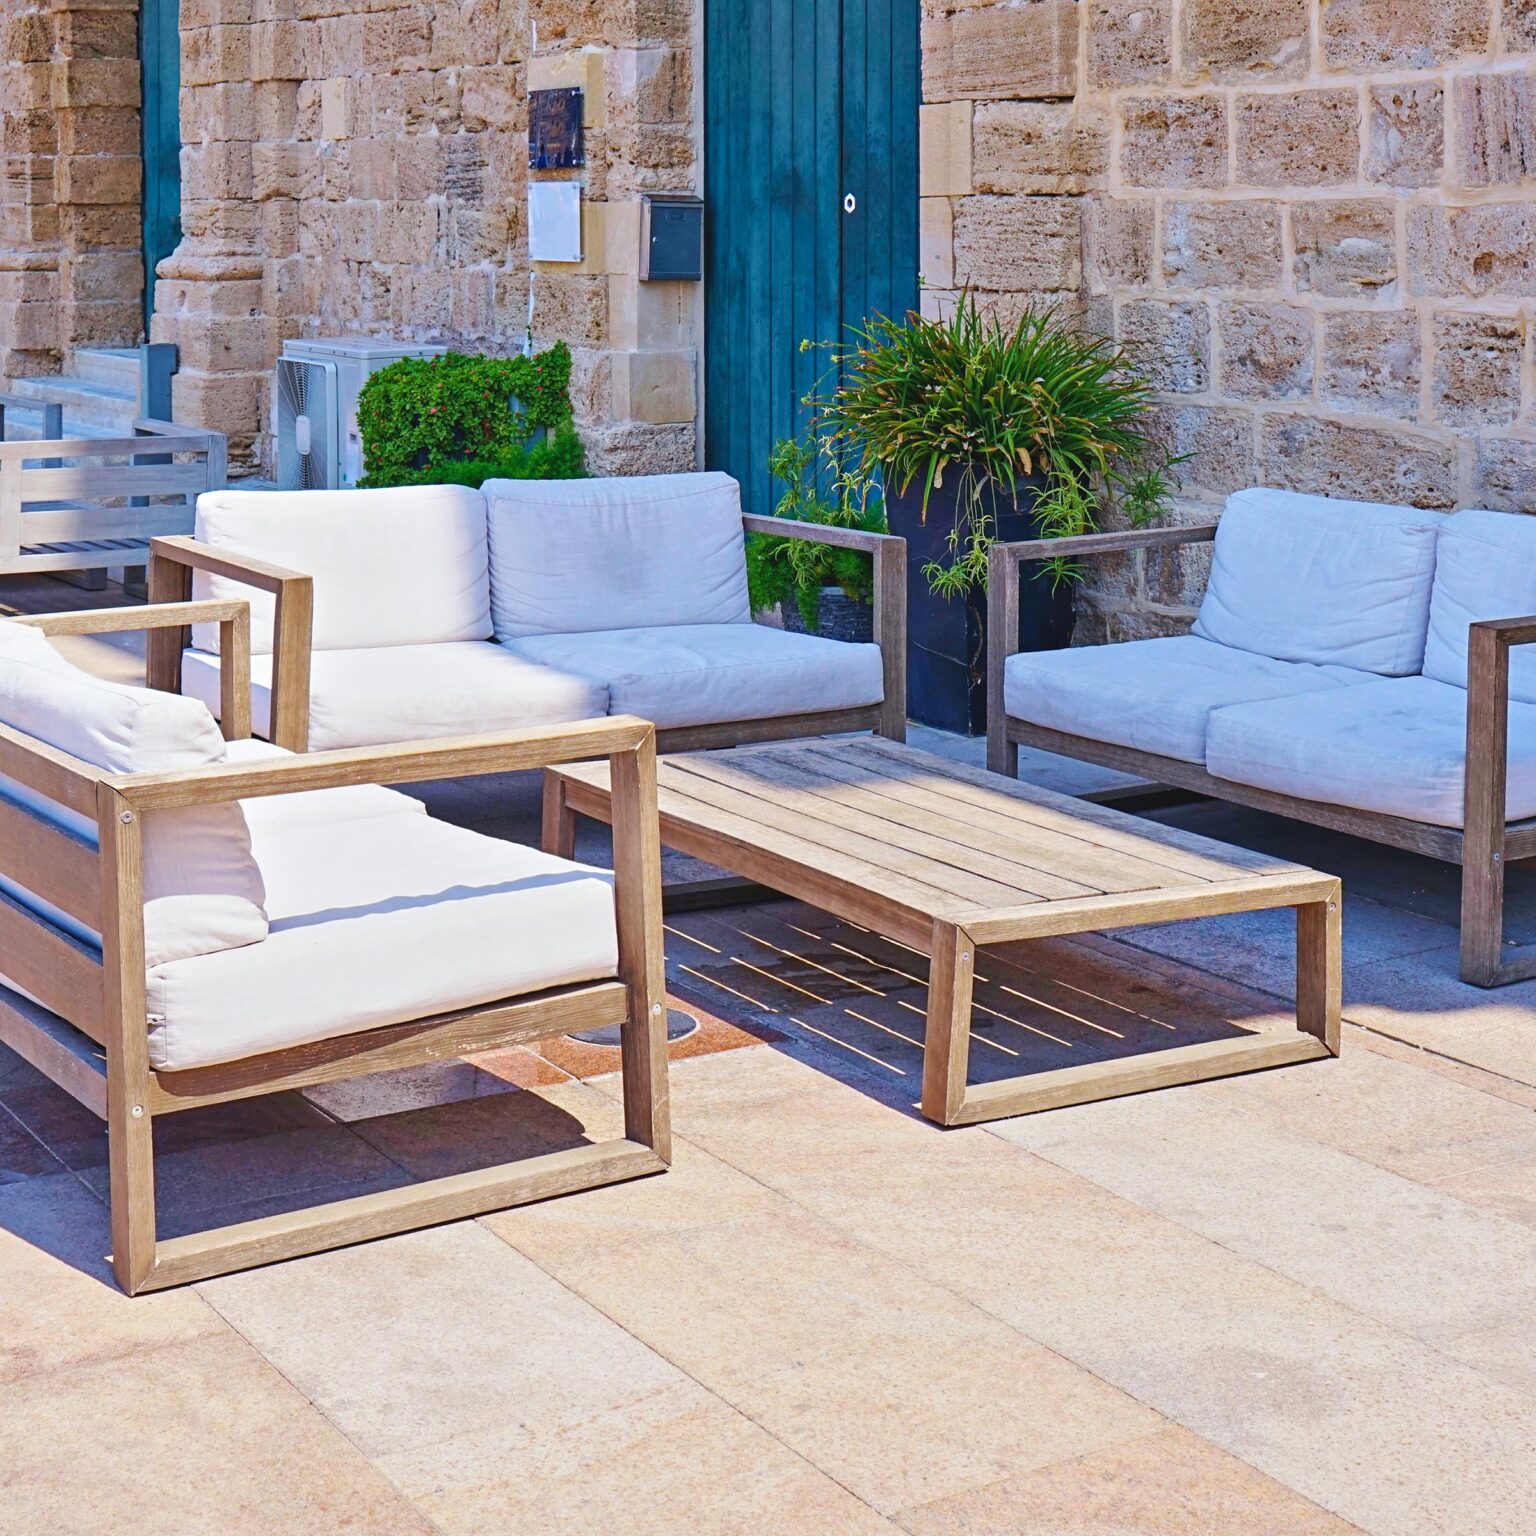 Mediterranean garden seating